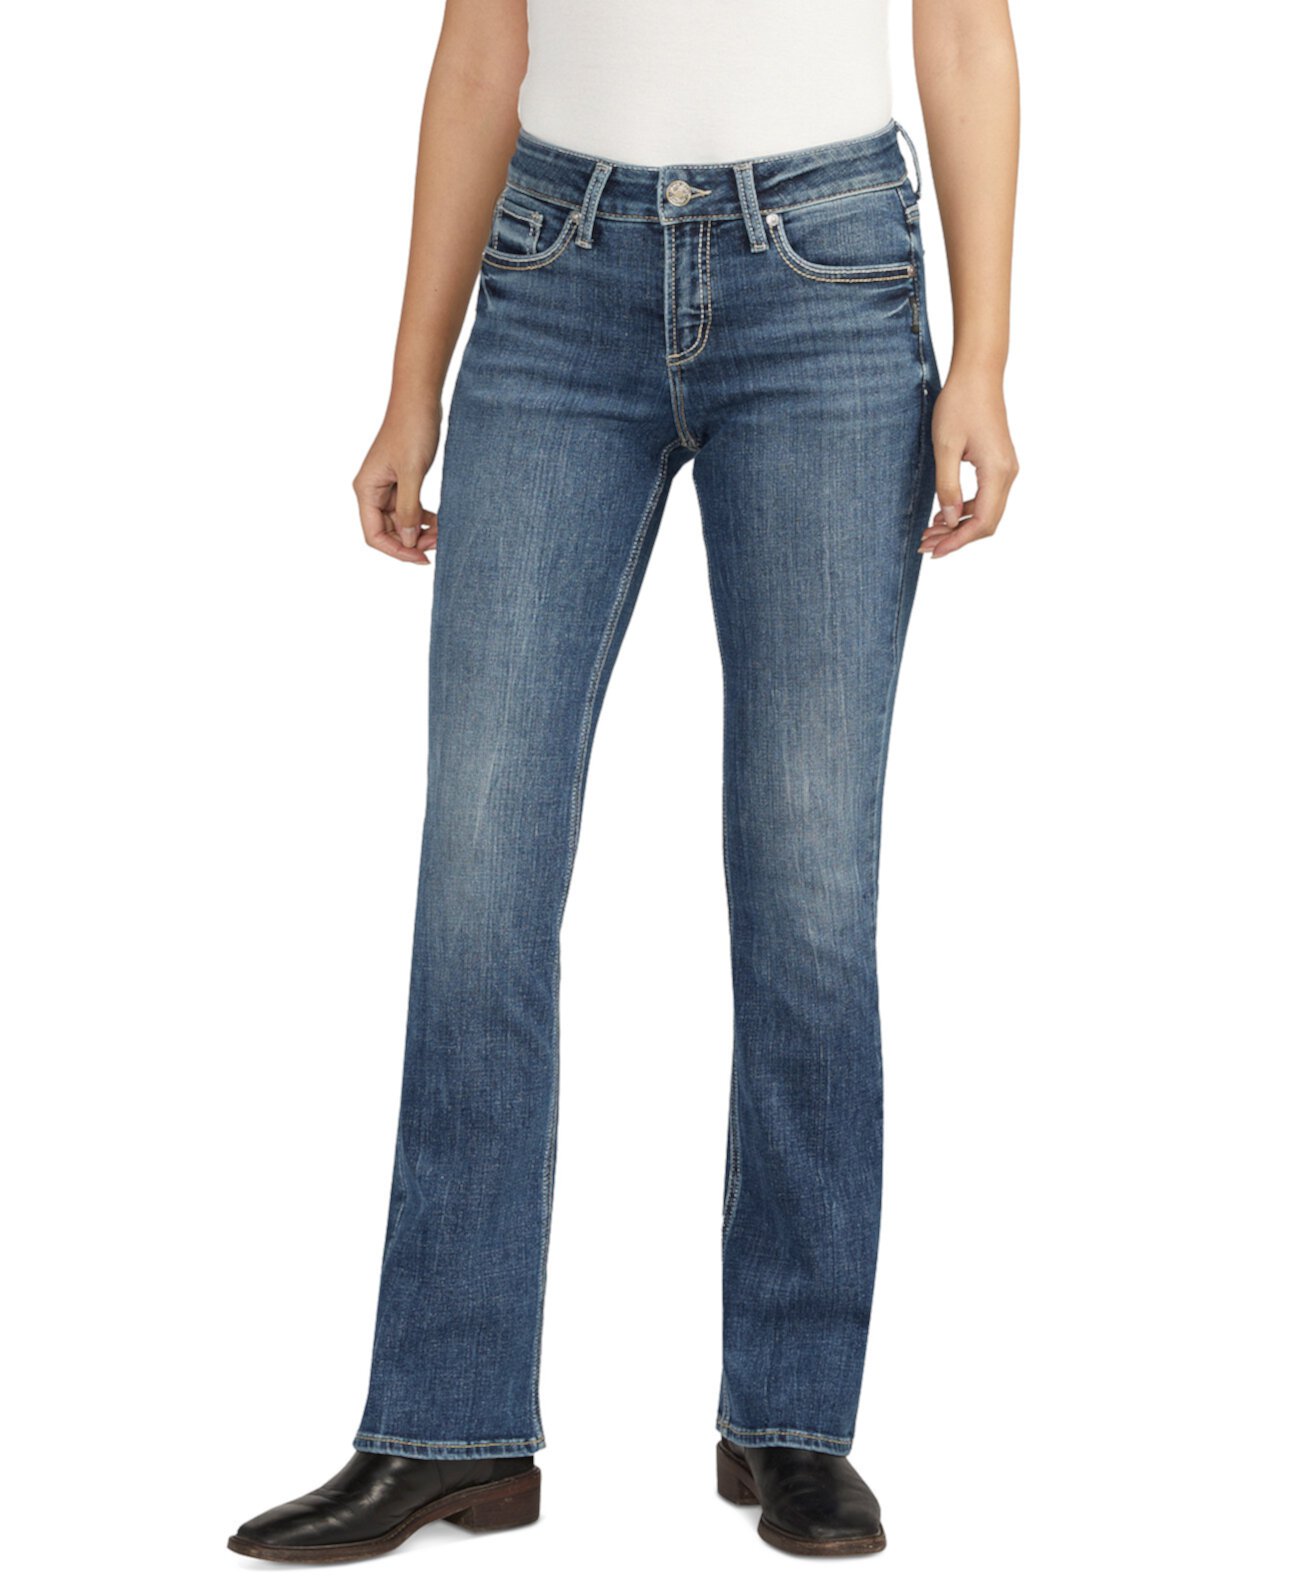 Женские джинсы Elyse Bootcut со средней посадкой Silver Jeans Co.